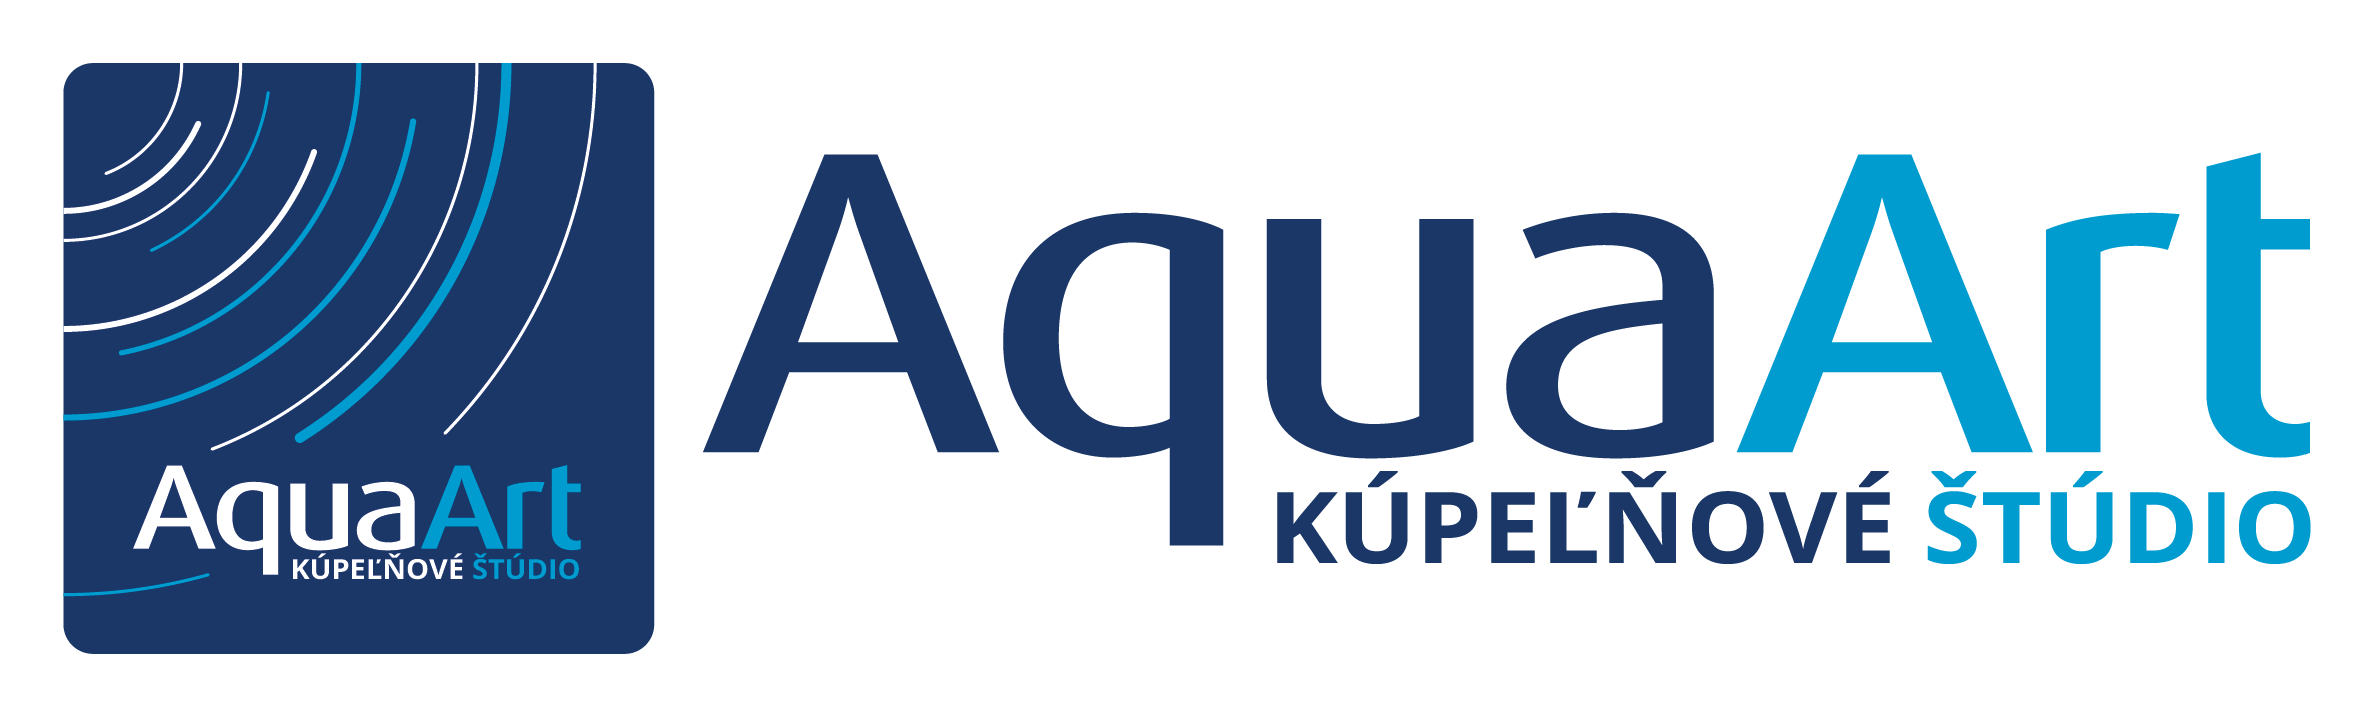 AquaArt